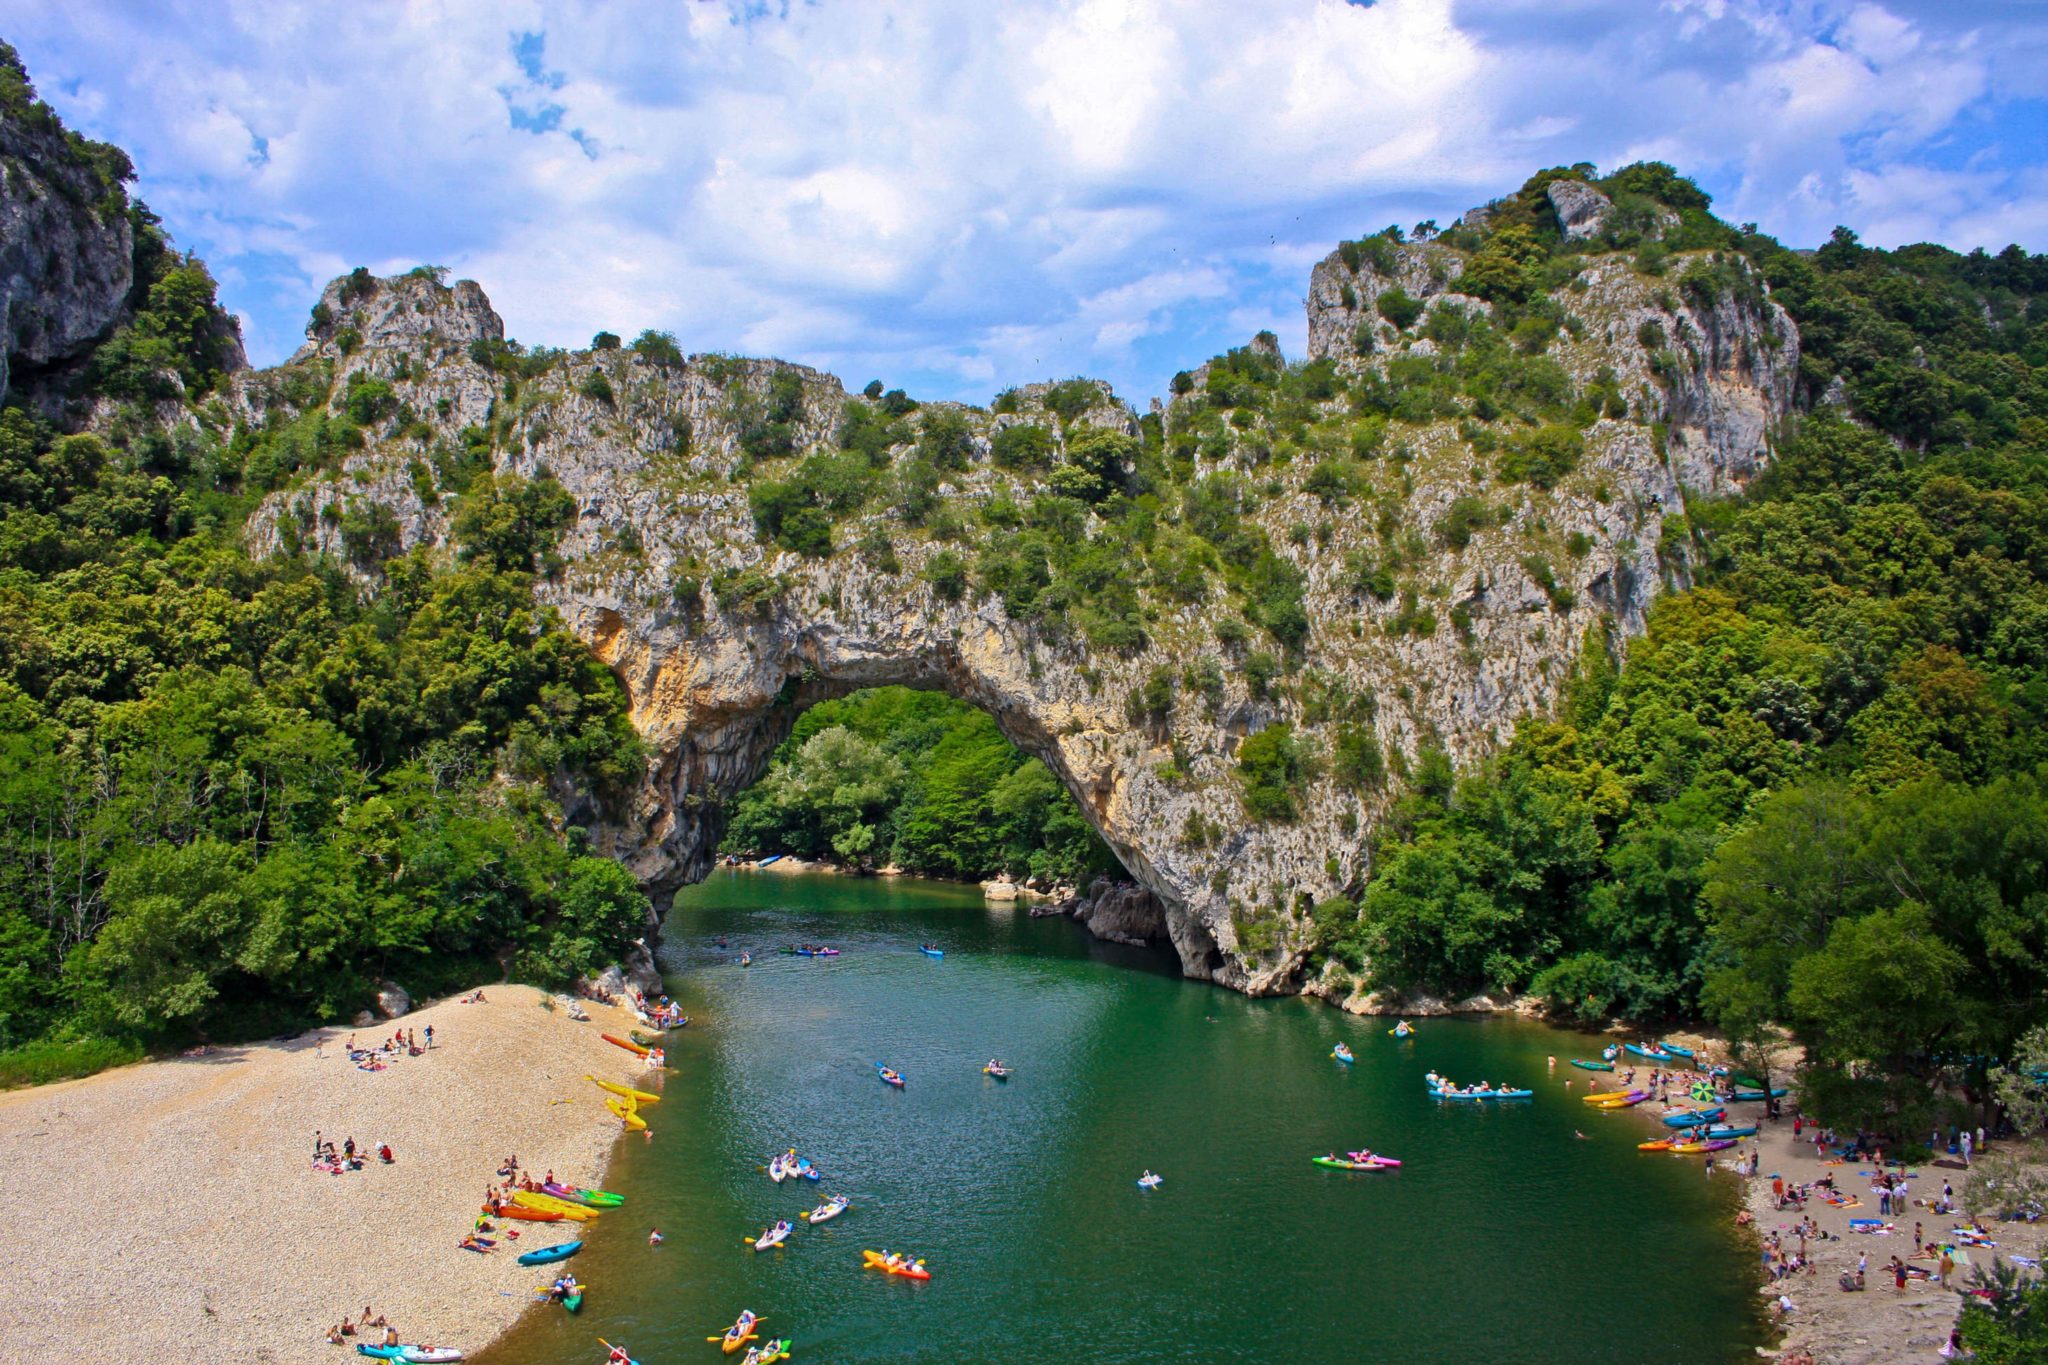 de Pont d’Arc, een natuurlijke boog over het water in de Ardèche, met aan beide kanten van de rivier strandjes met mensen en kano's in allerlei kleuren